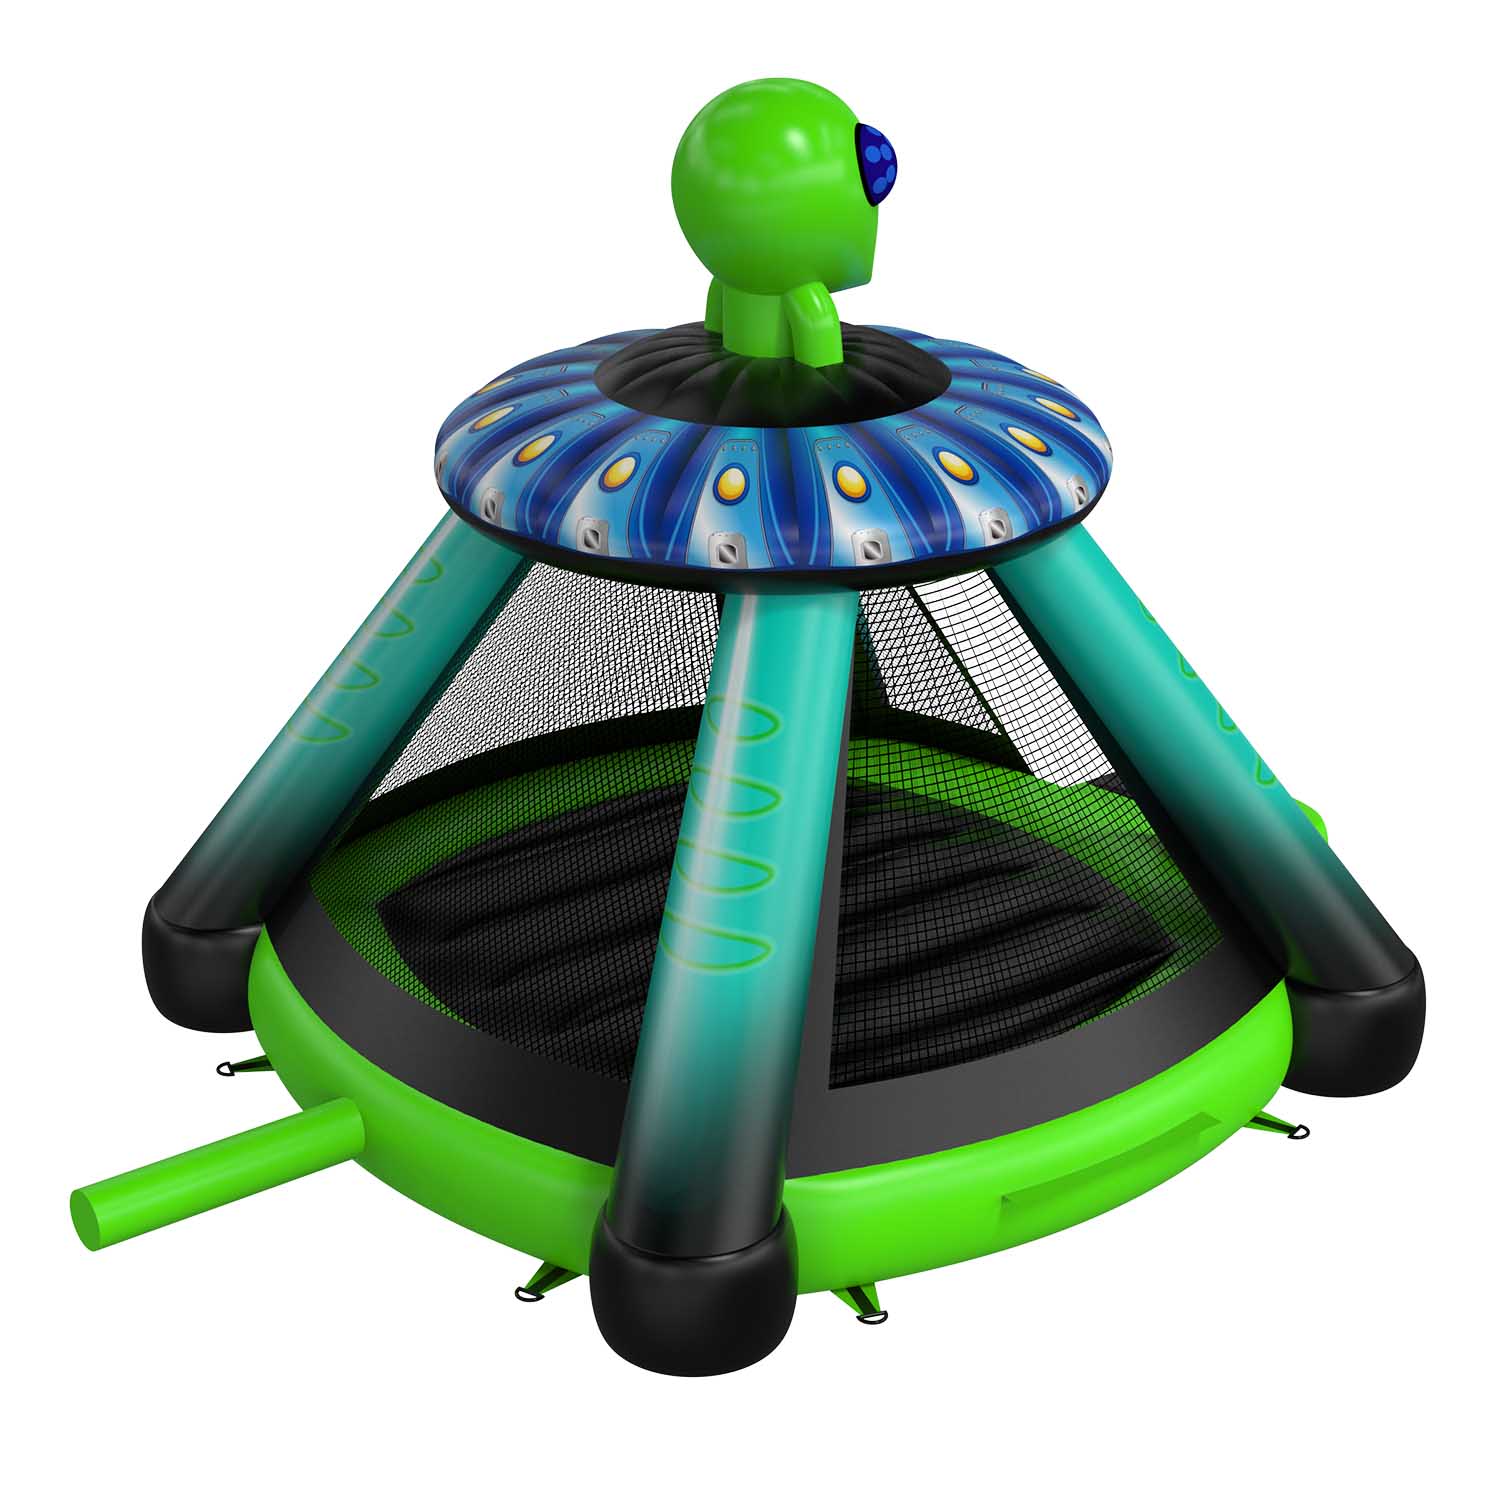 New Design Alien Inflatable Bounce HouseYG-163